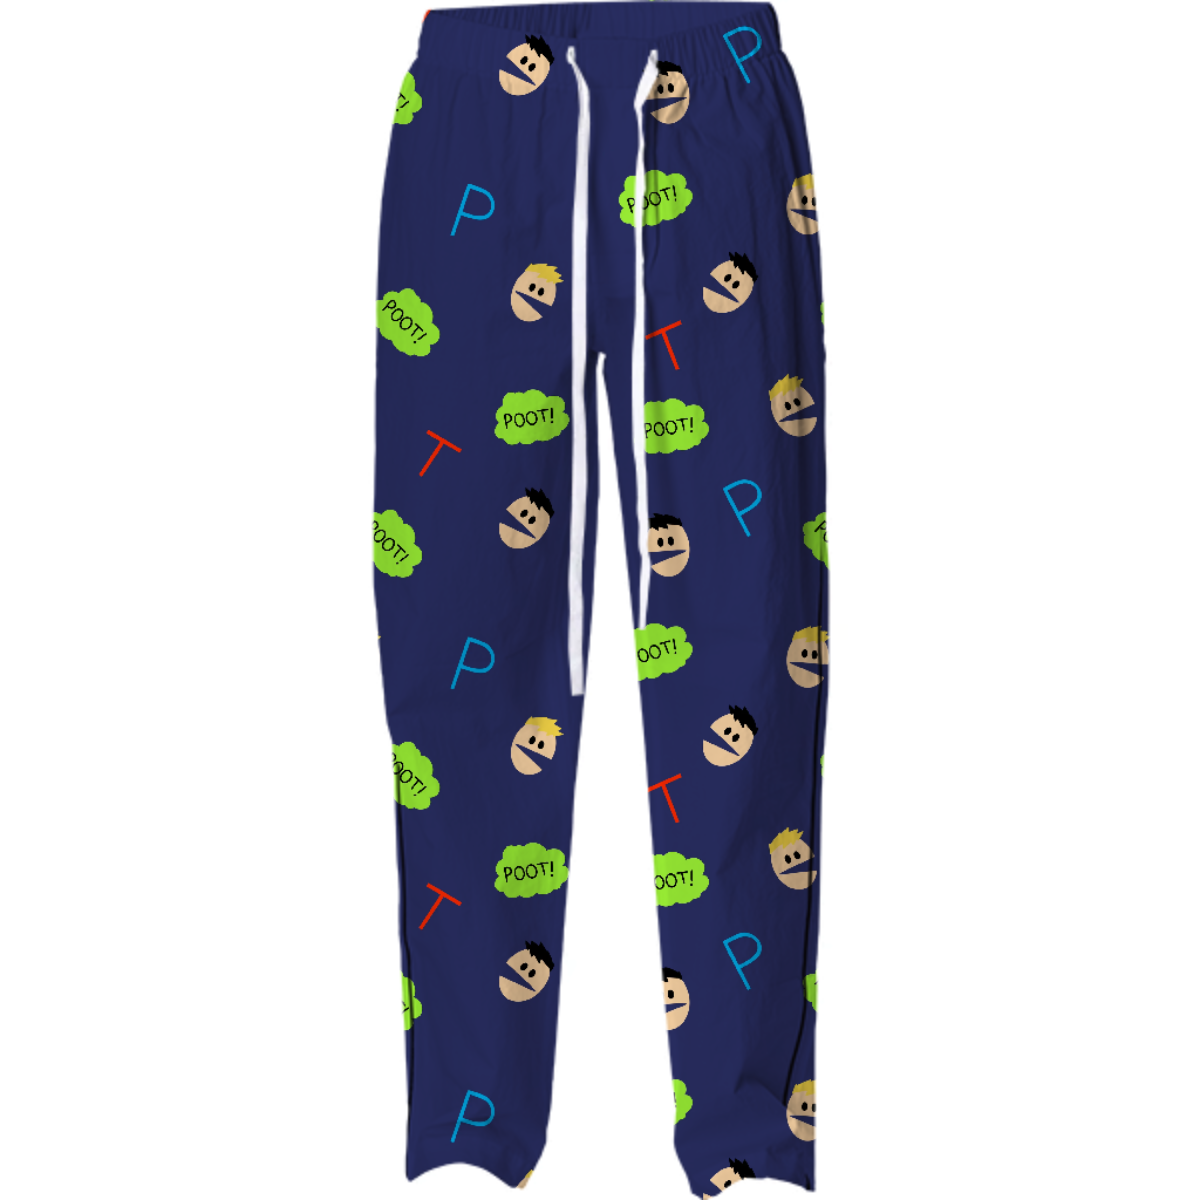 Kyle Broflovski's Pajama pants – PAOM